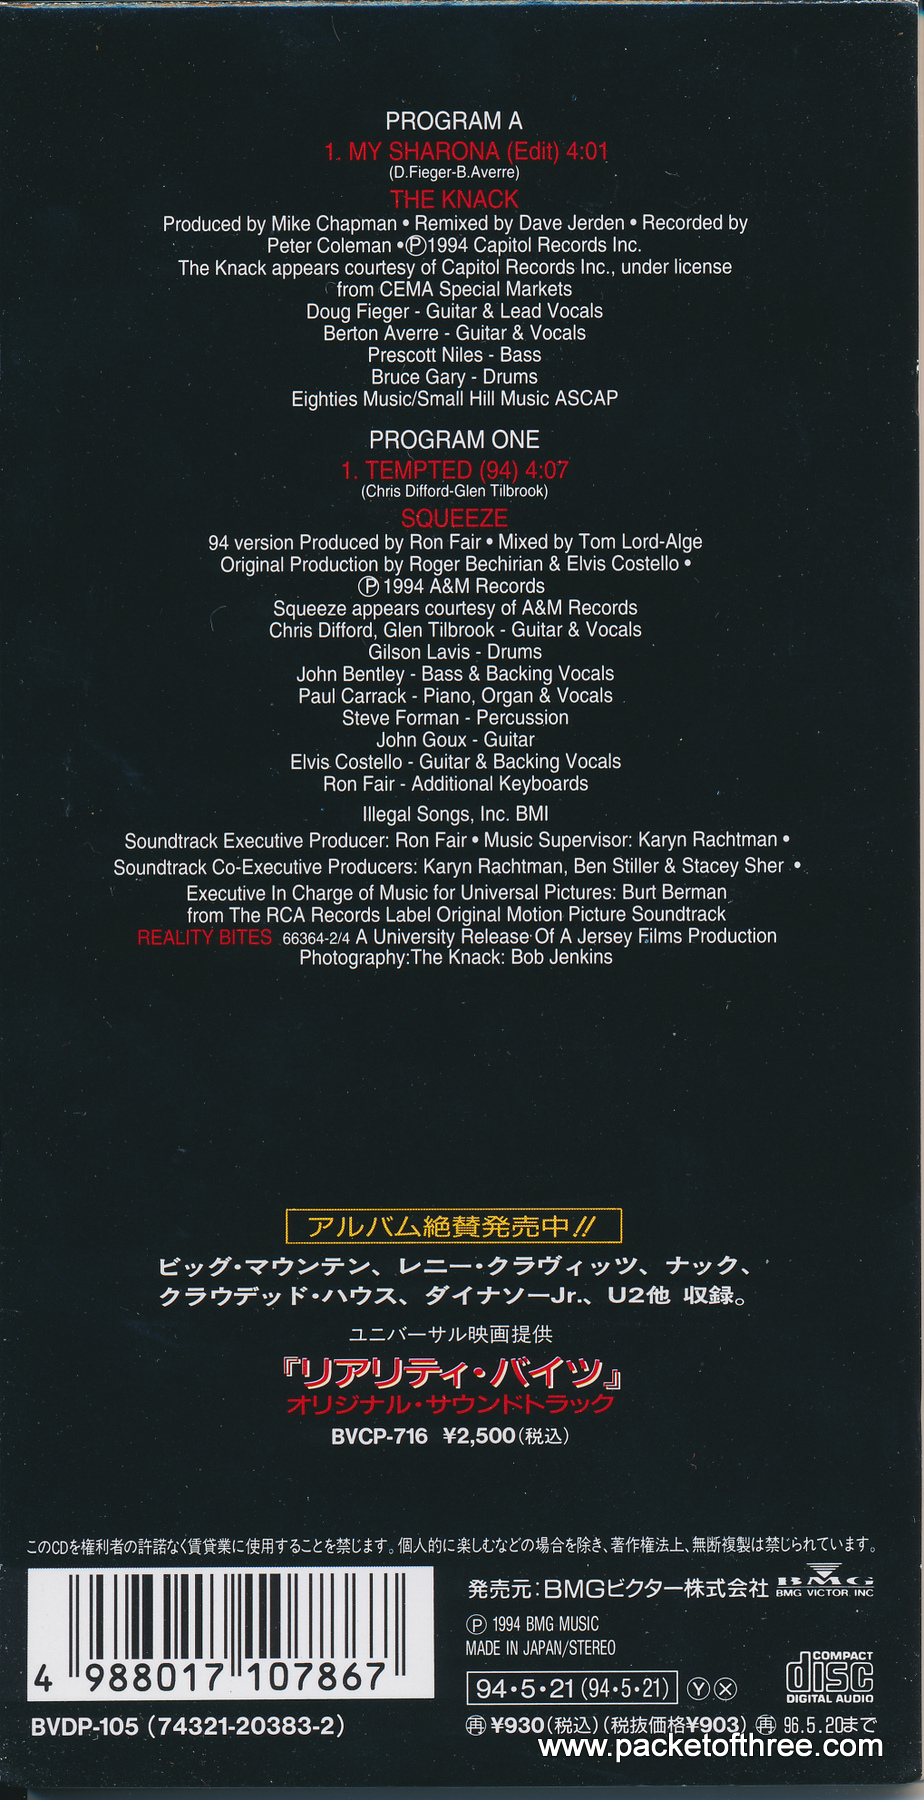 Tempted 94 - Japan - 3" CD single